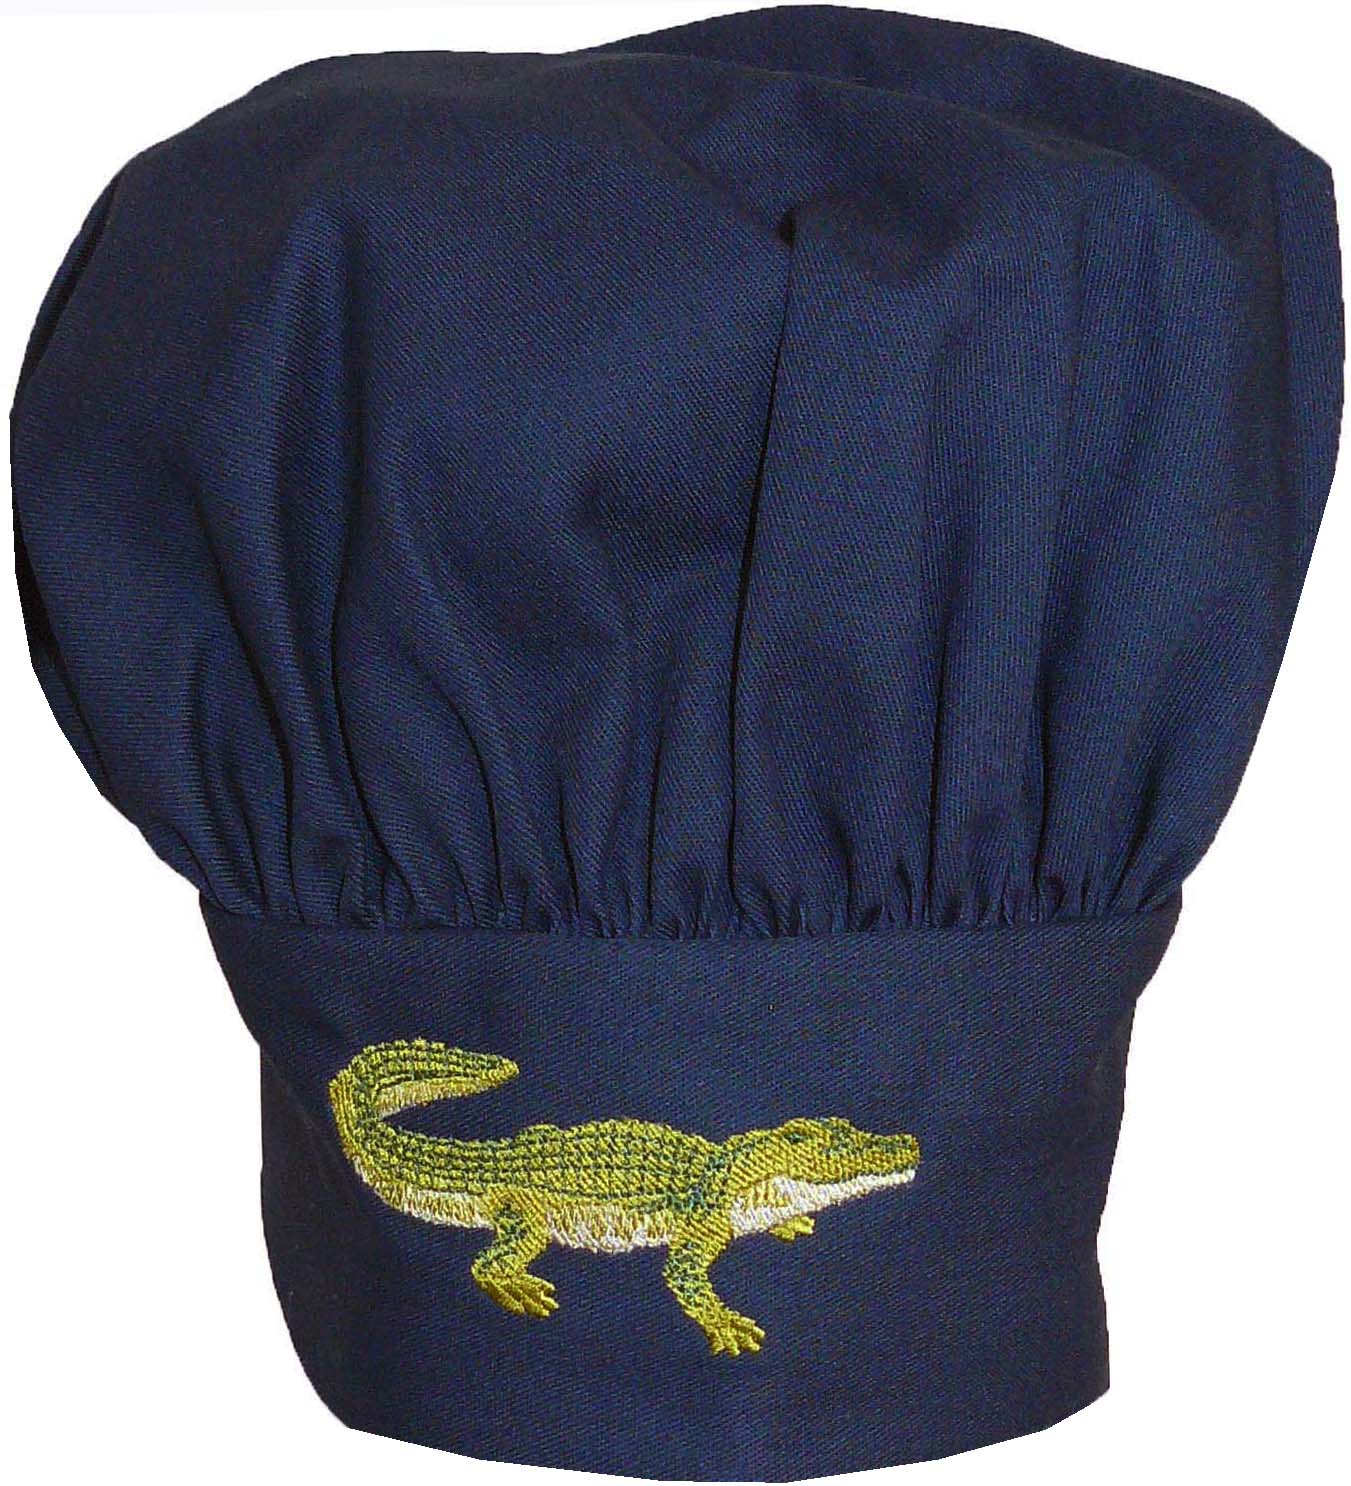 Alligator Chef Hat Toque Cook Cap